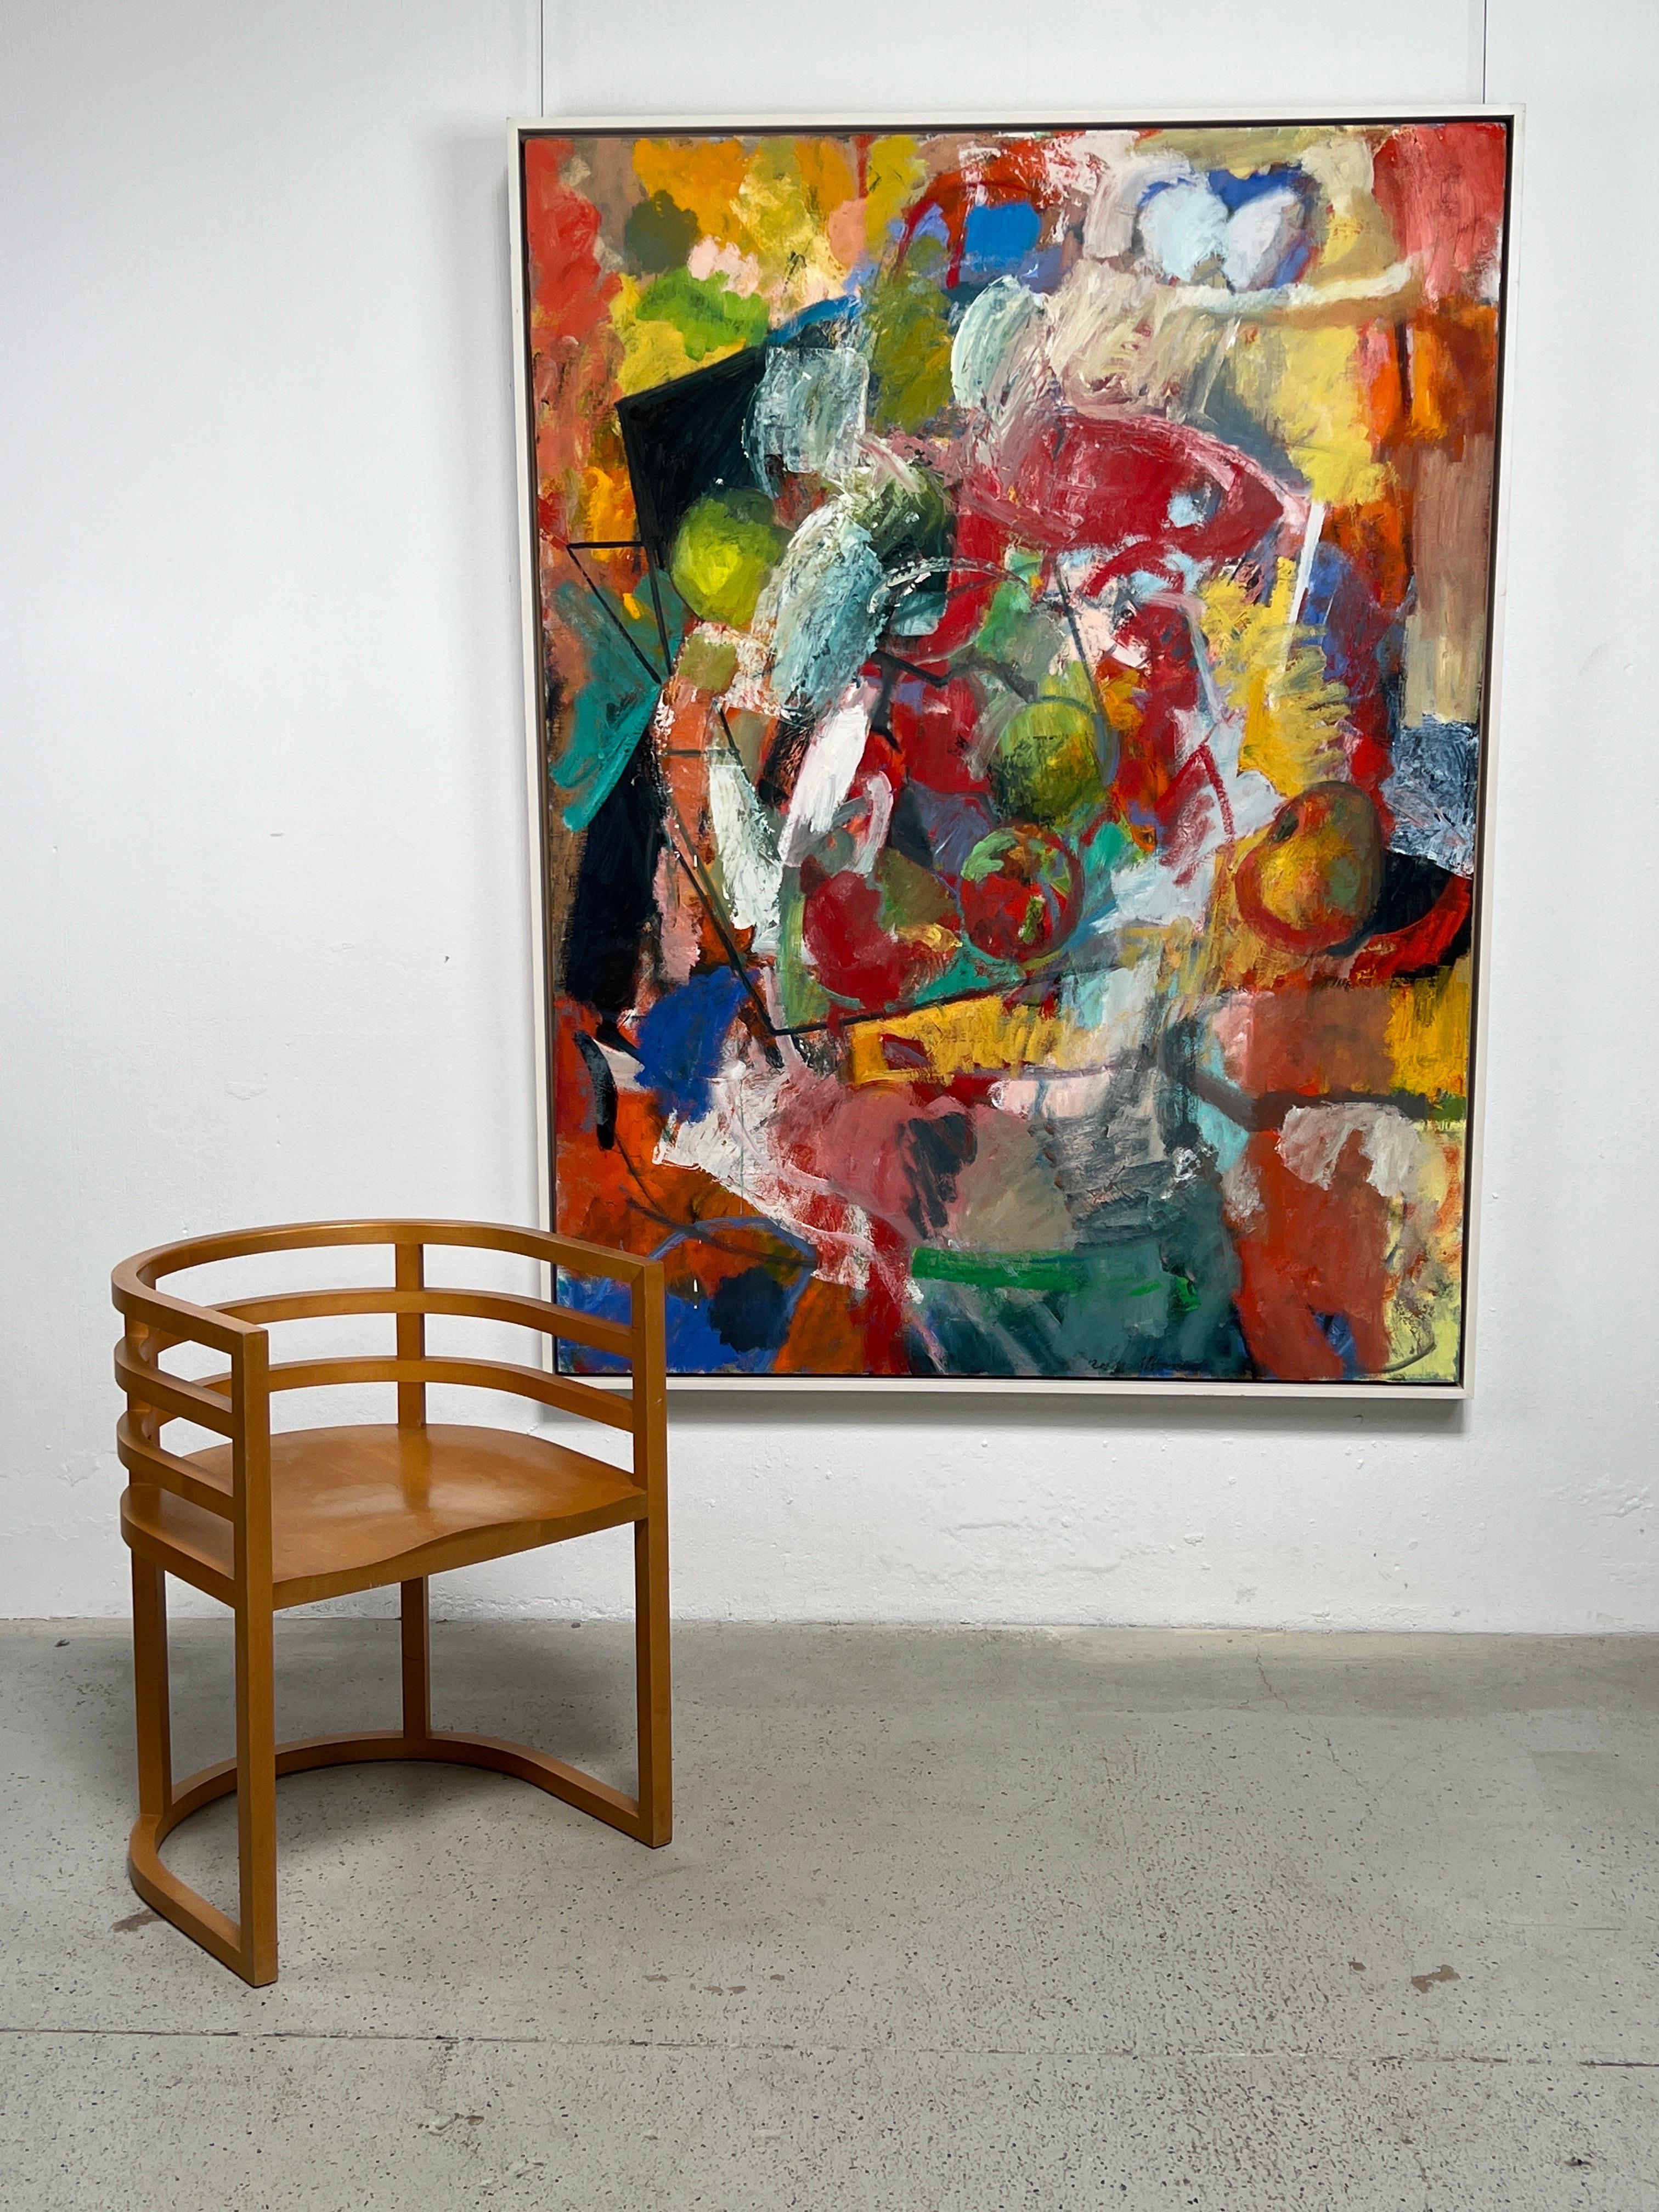 Paul Russotto (américain, 1941-2014) a développé sa perspective artistique à NYC pendant la période de peinture expressionniste abstraite qui a suivi la Seconde Guerre mondiale et qui a été connue sous le nom d'École de New York. Dans ce tableau,